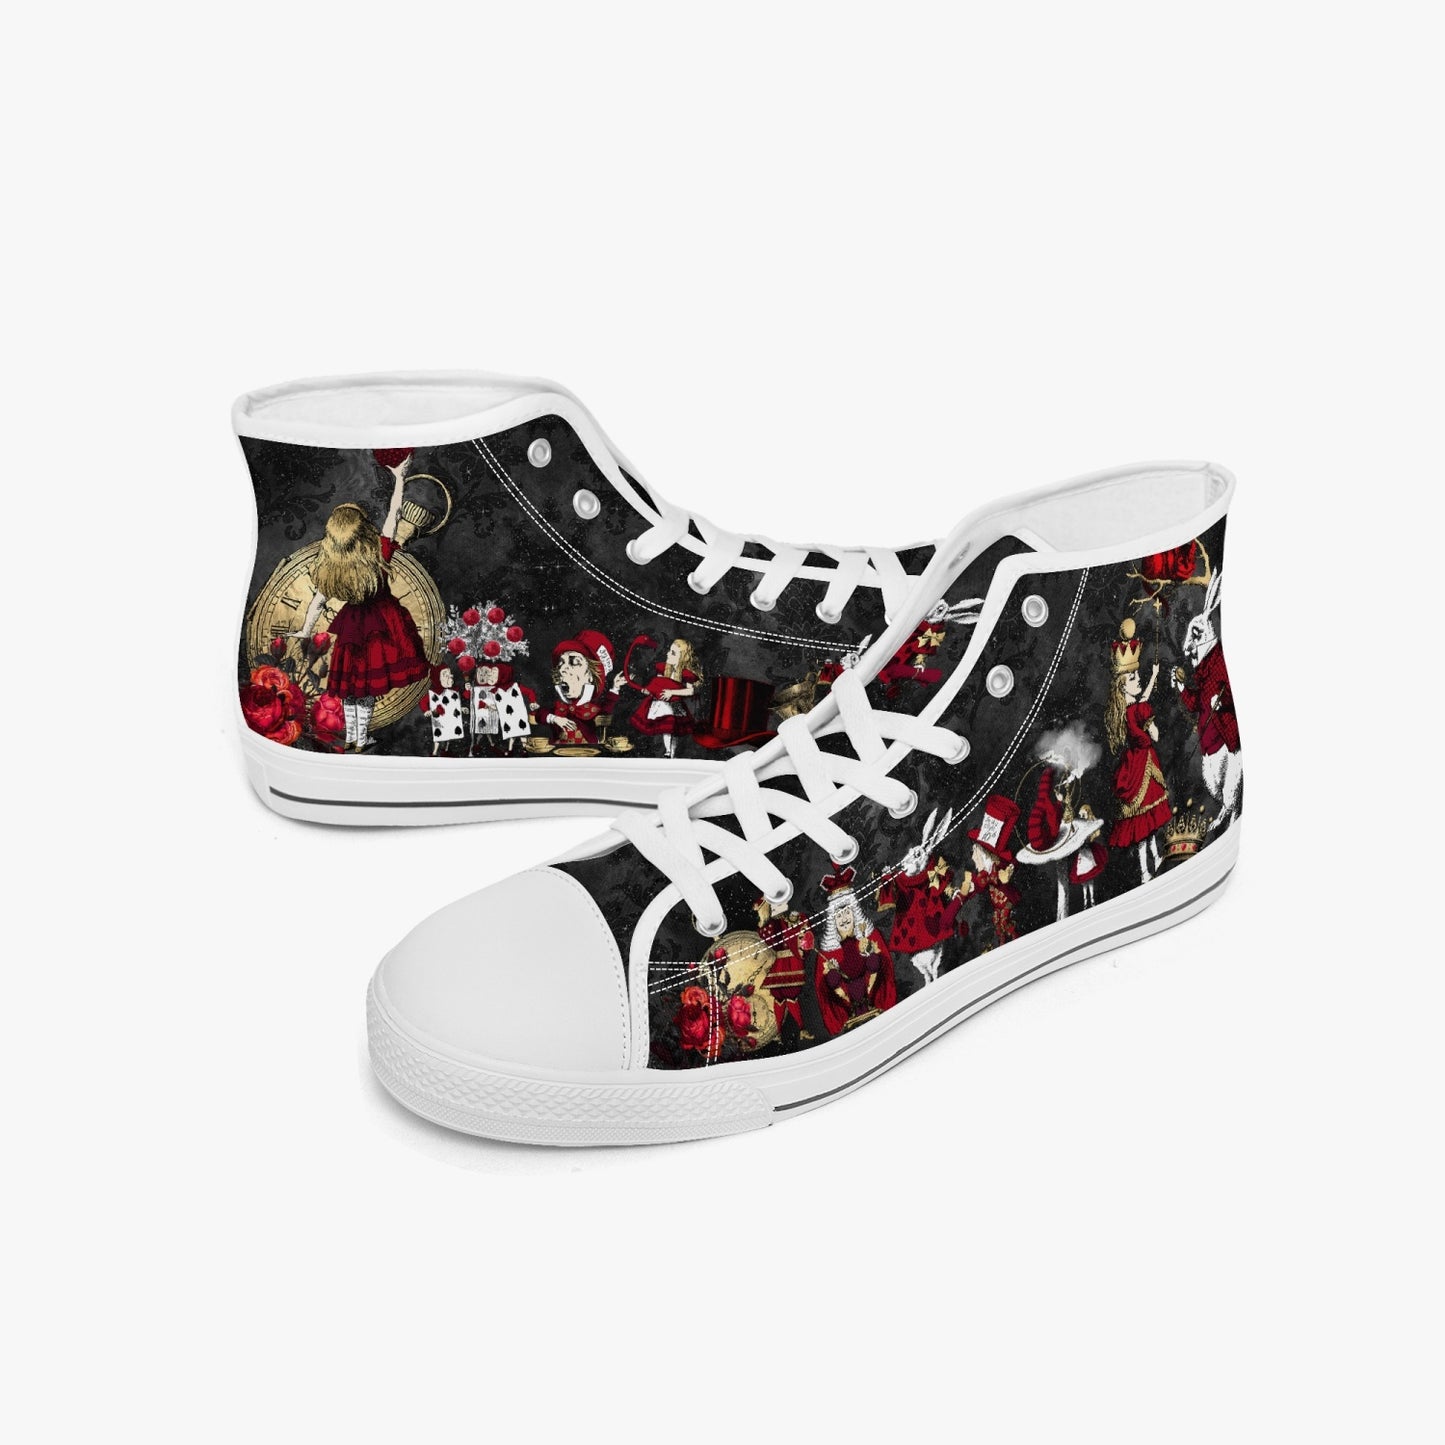 Alice in Wonderland Queen of Hearts Hi Top Sneakers (JPSNRG1)